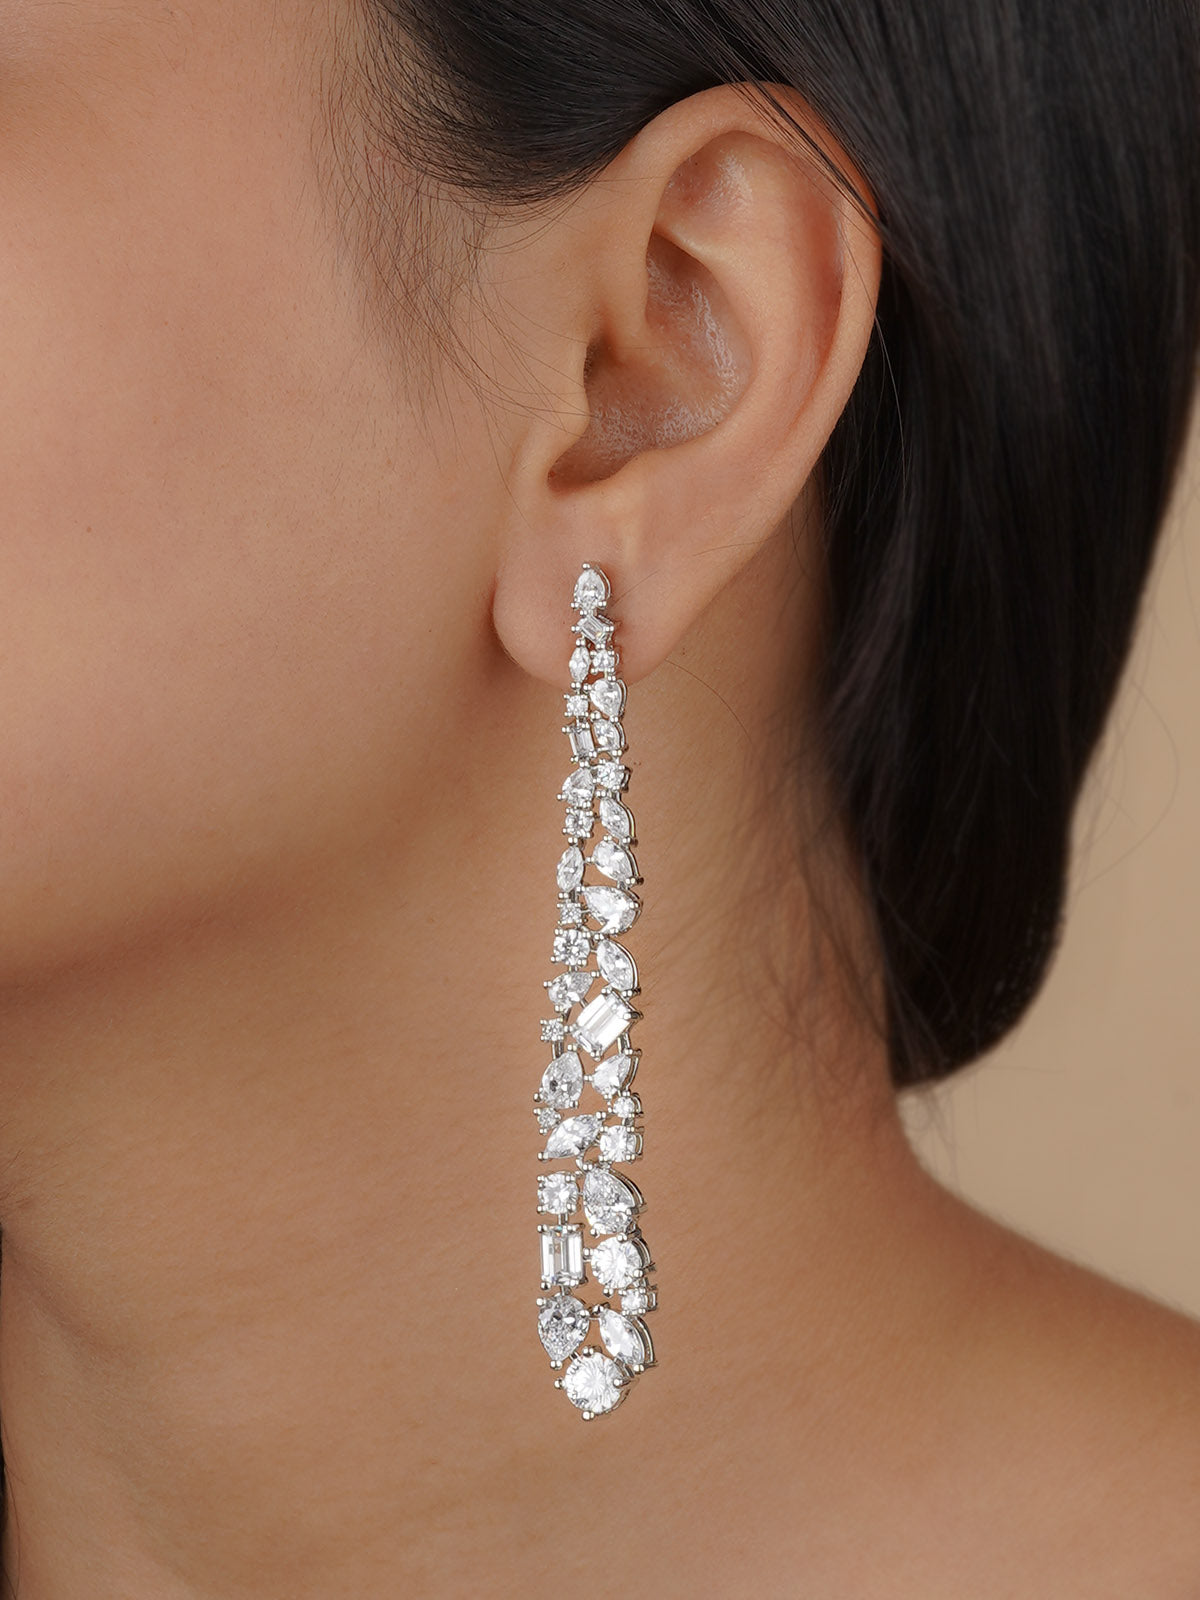 CZEAR534 - Silver Plated Faux Diamond Earrings